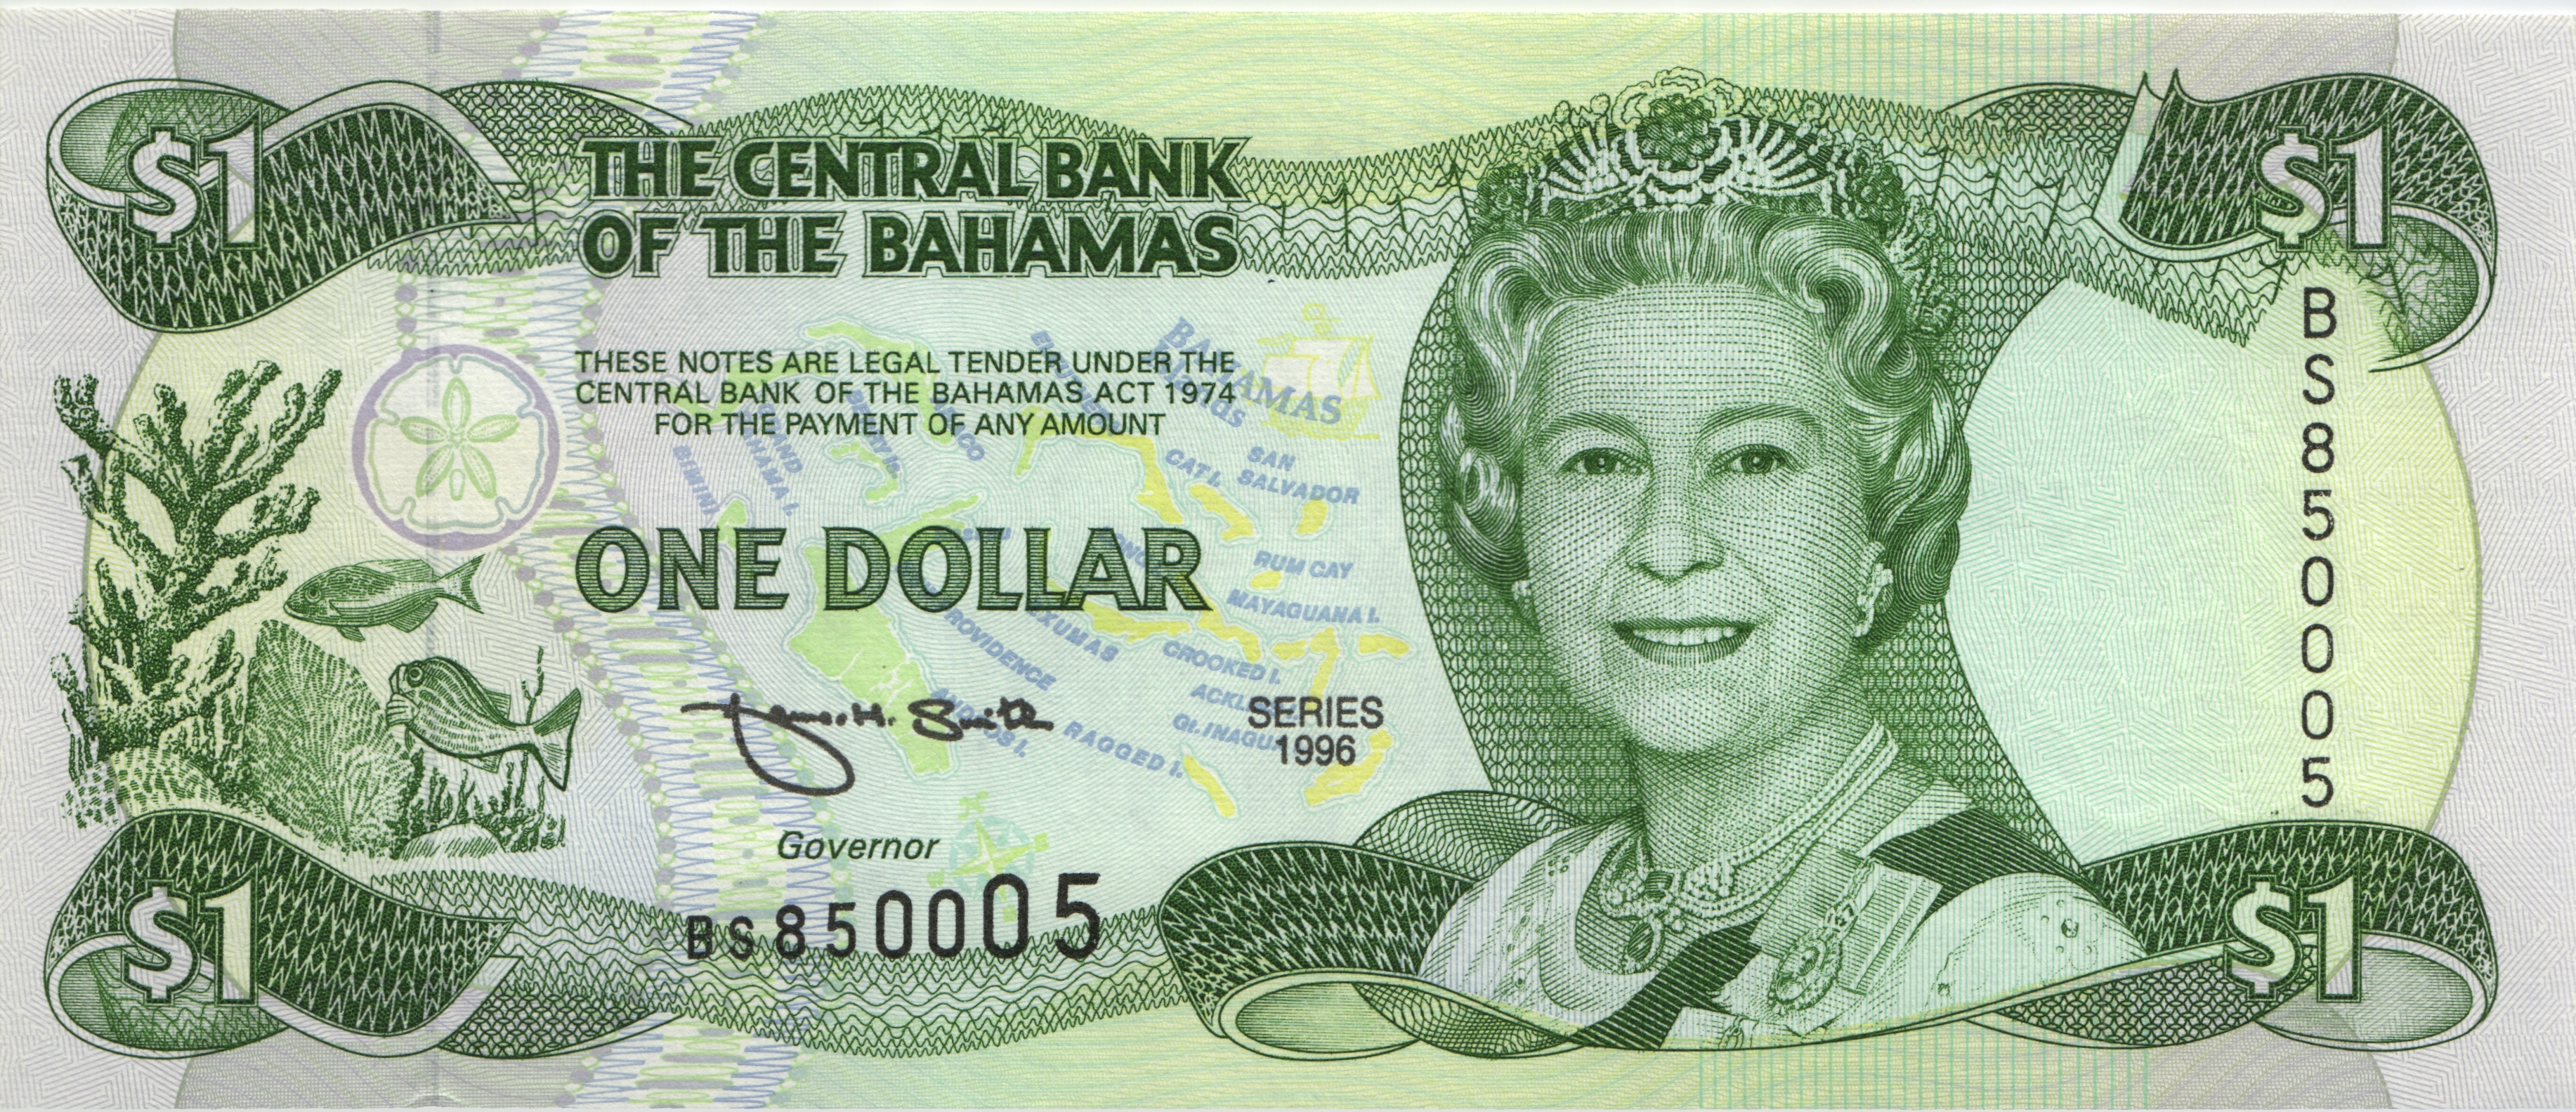 Купюра 1996. Иностранные деньги. Багамы 1.2 доллара. Купюры Багамских островов. 1 Доллар Багамы банкнота.